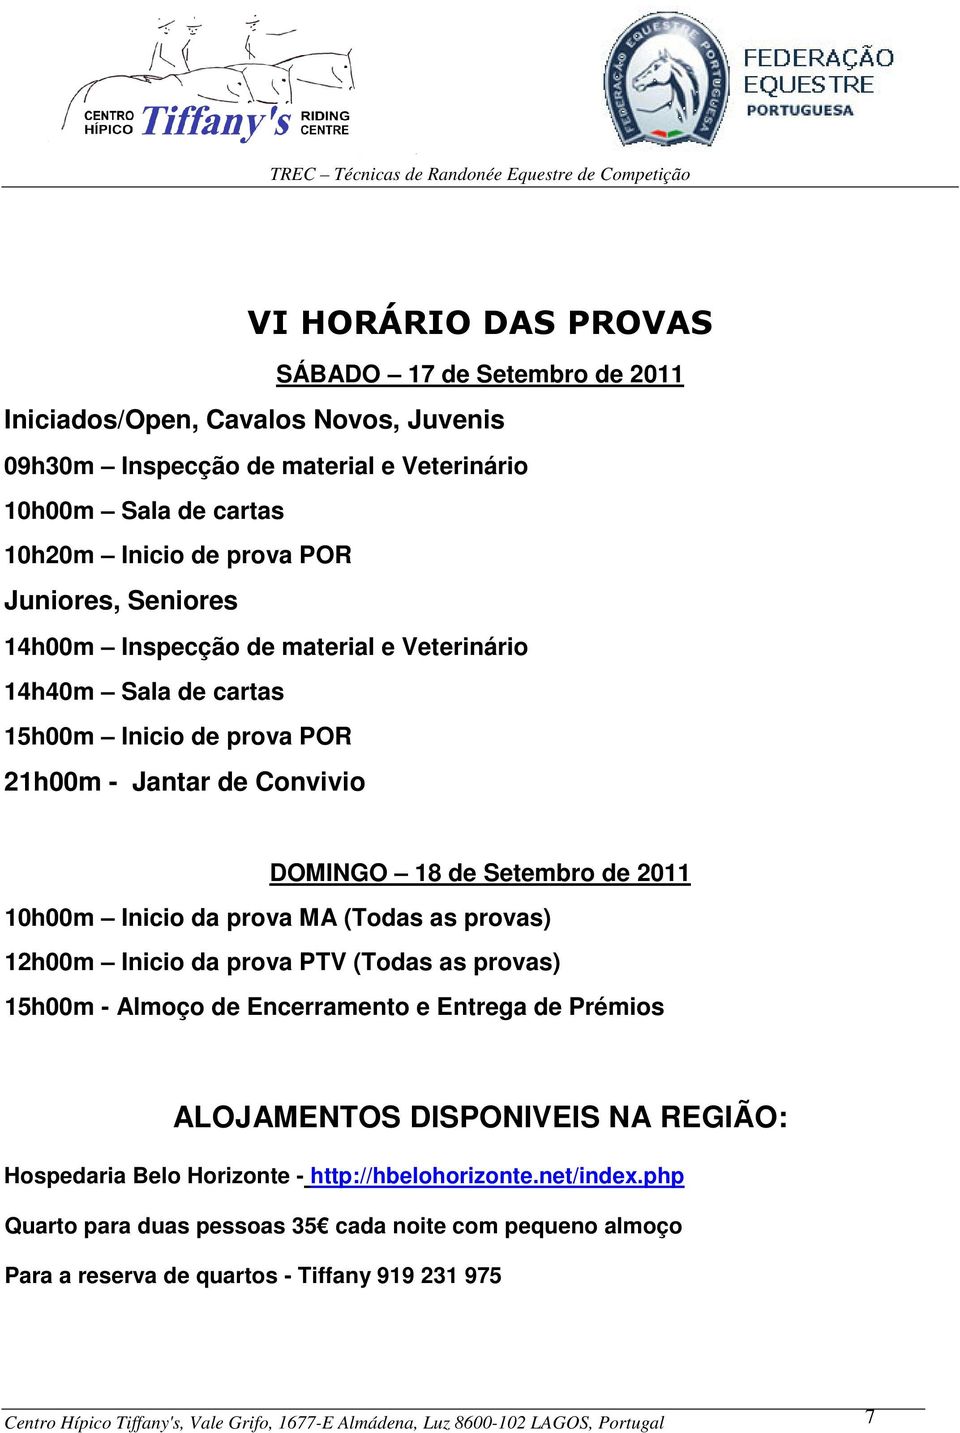 provas) 12h00m Inicio da prova PTV (Todas as provas) 15h00m - Almoço de Encerramento e Entrega de Prémios ALOJAMENTOS DISPONIVEIS NA REGIÃO: Hospedaria Belo Horizonte - http://hbelohorizonte.